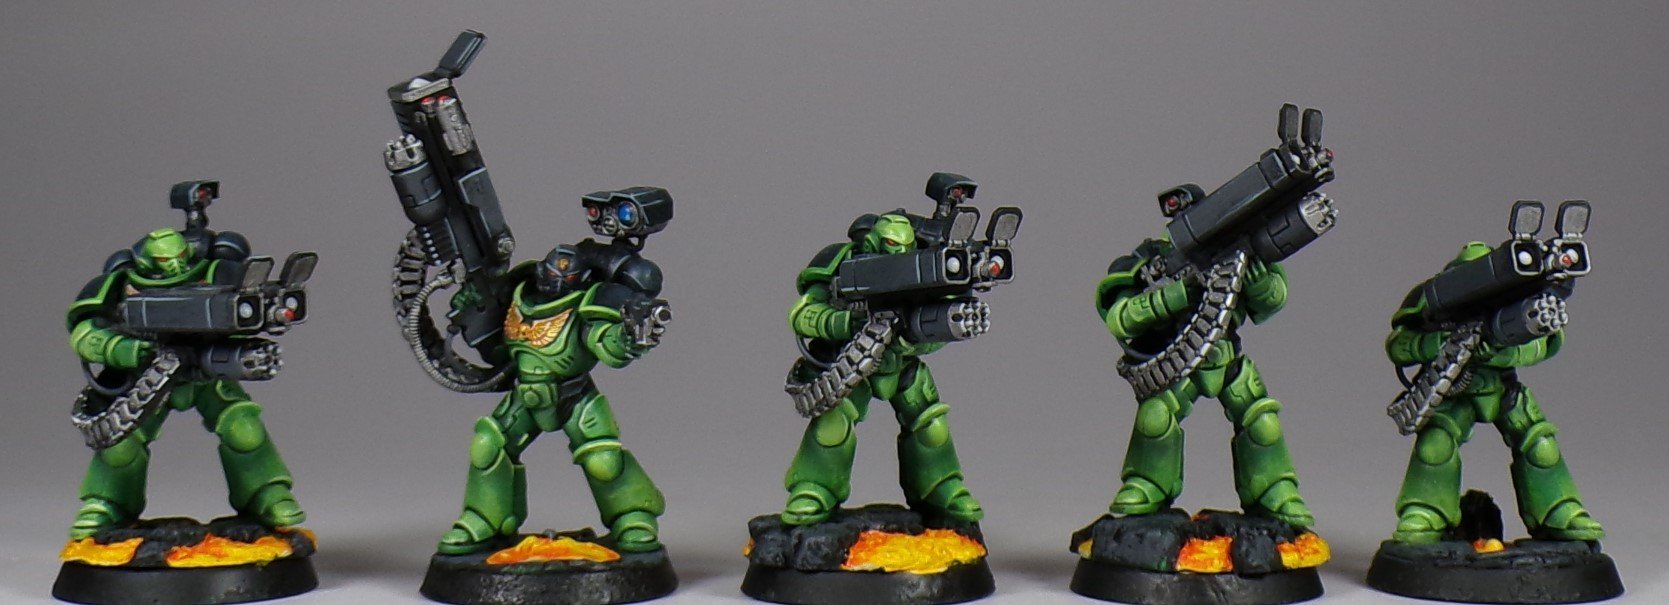 Paintedfigs Salamanders Space Marines Miniature Painting Service (4).jpg